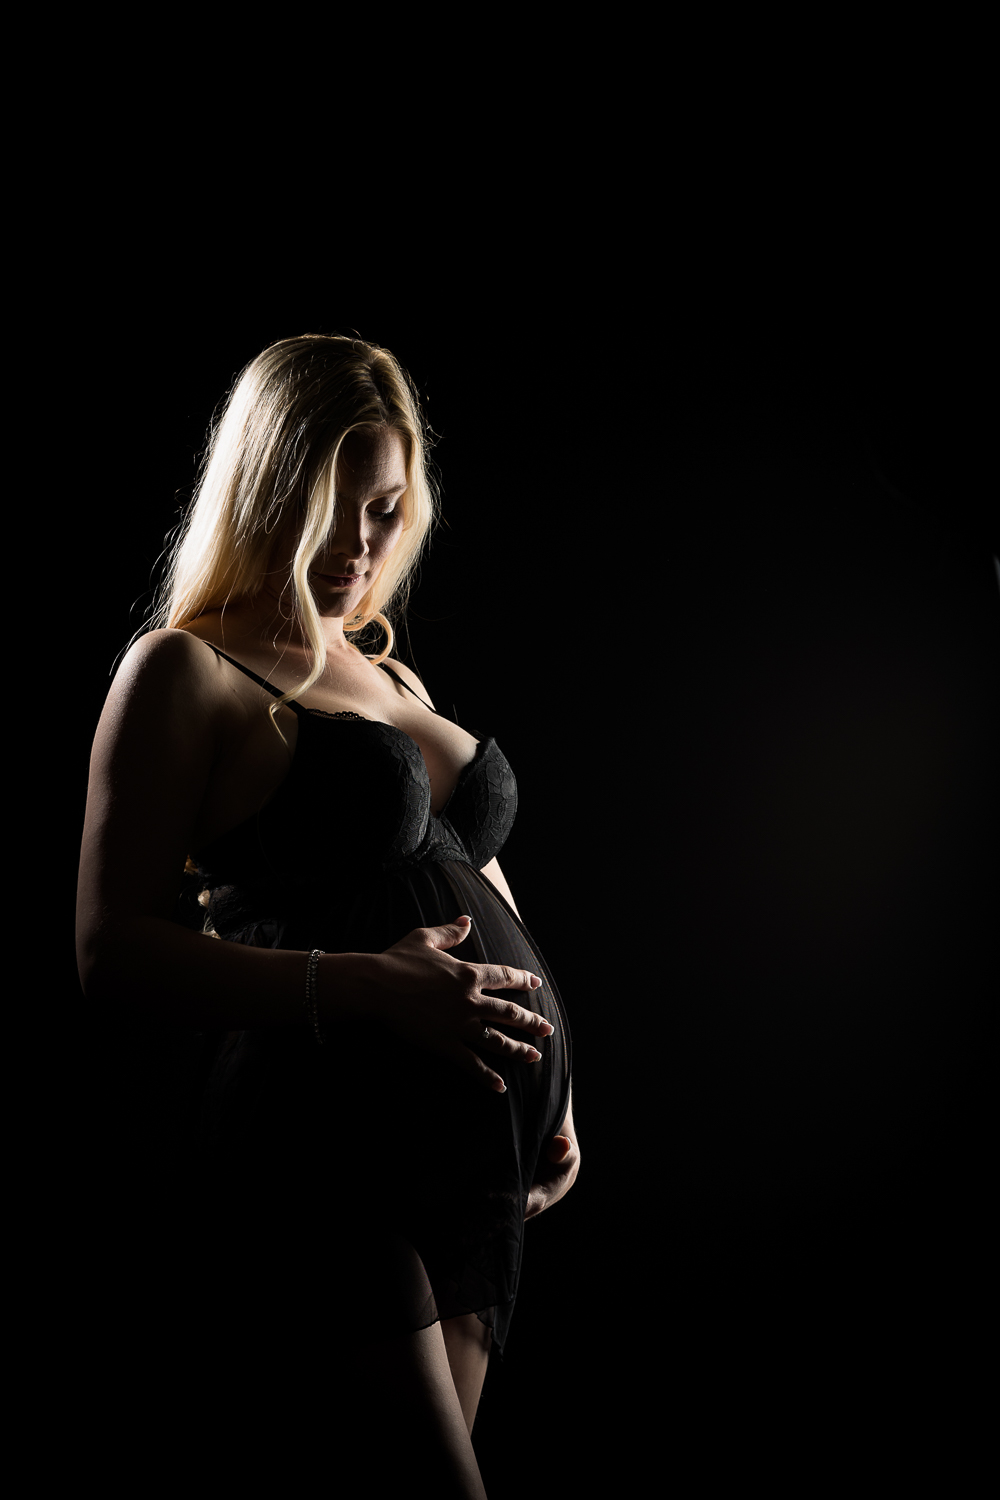 schwangerschaft fotografie muenchen und ingolstadt, fotografin radmila kerl dier